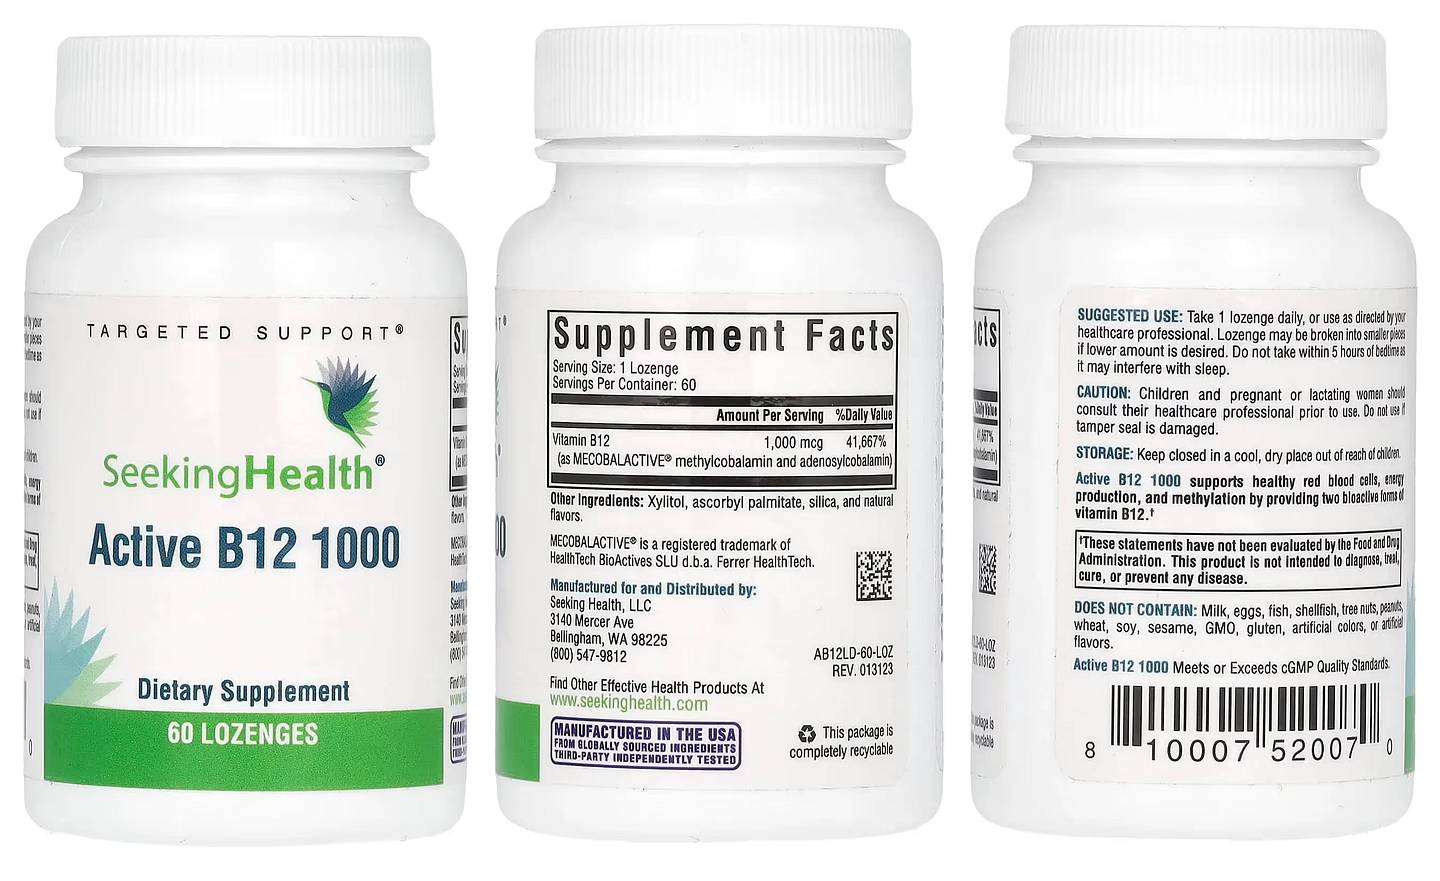 Seeking Health, Active B12 1000 packaging